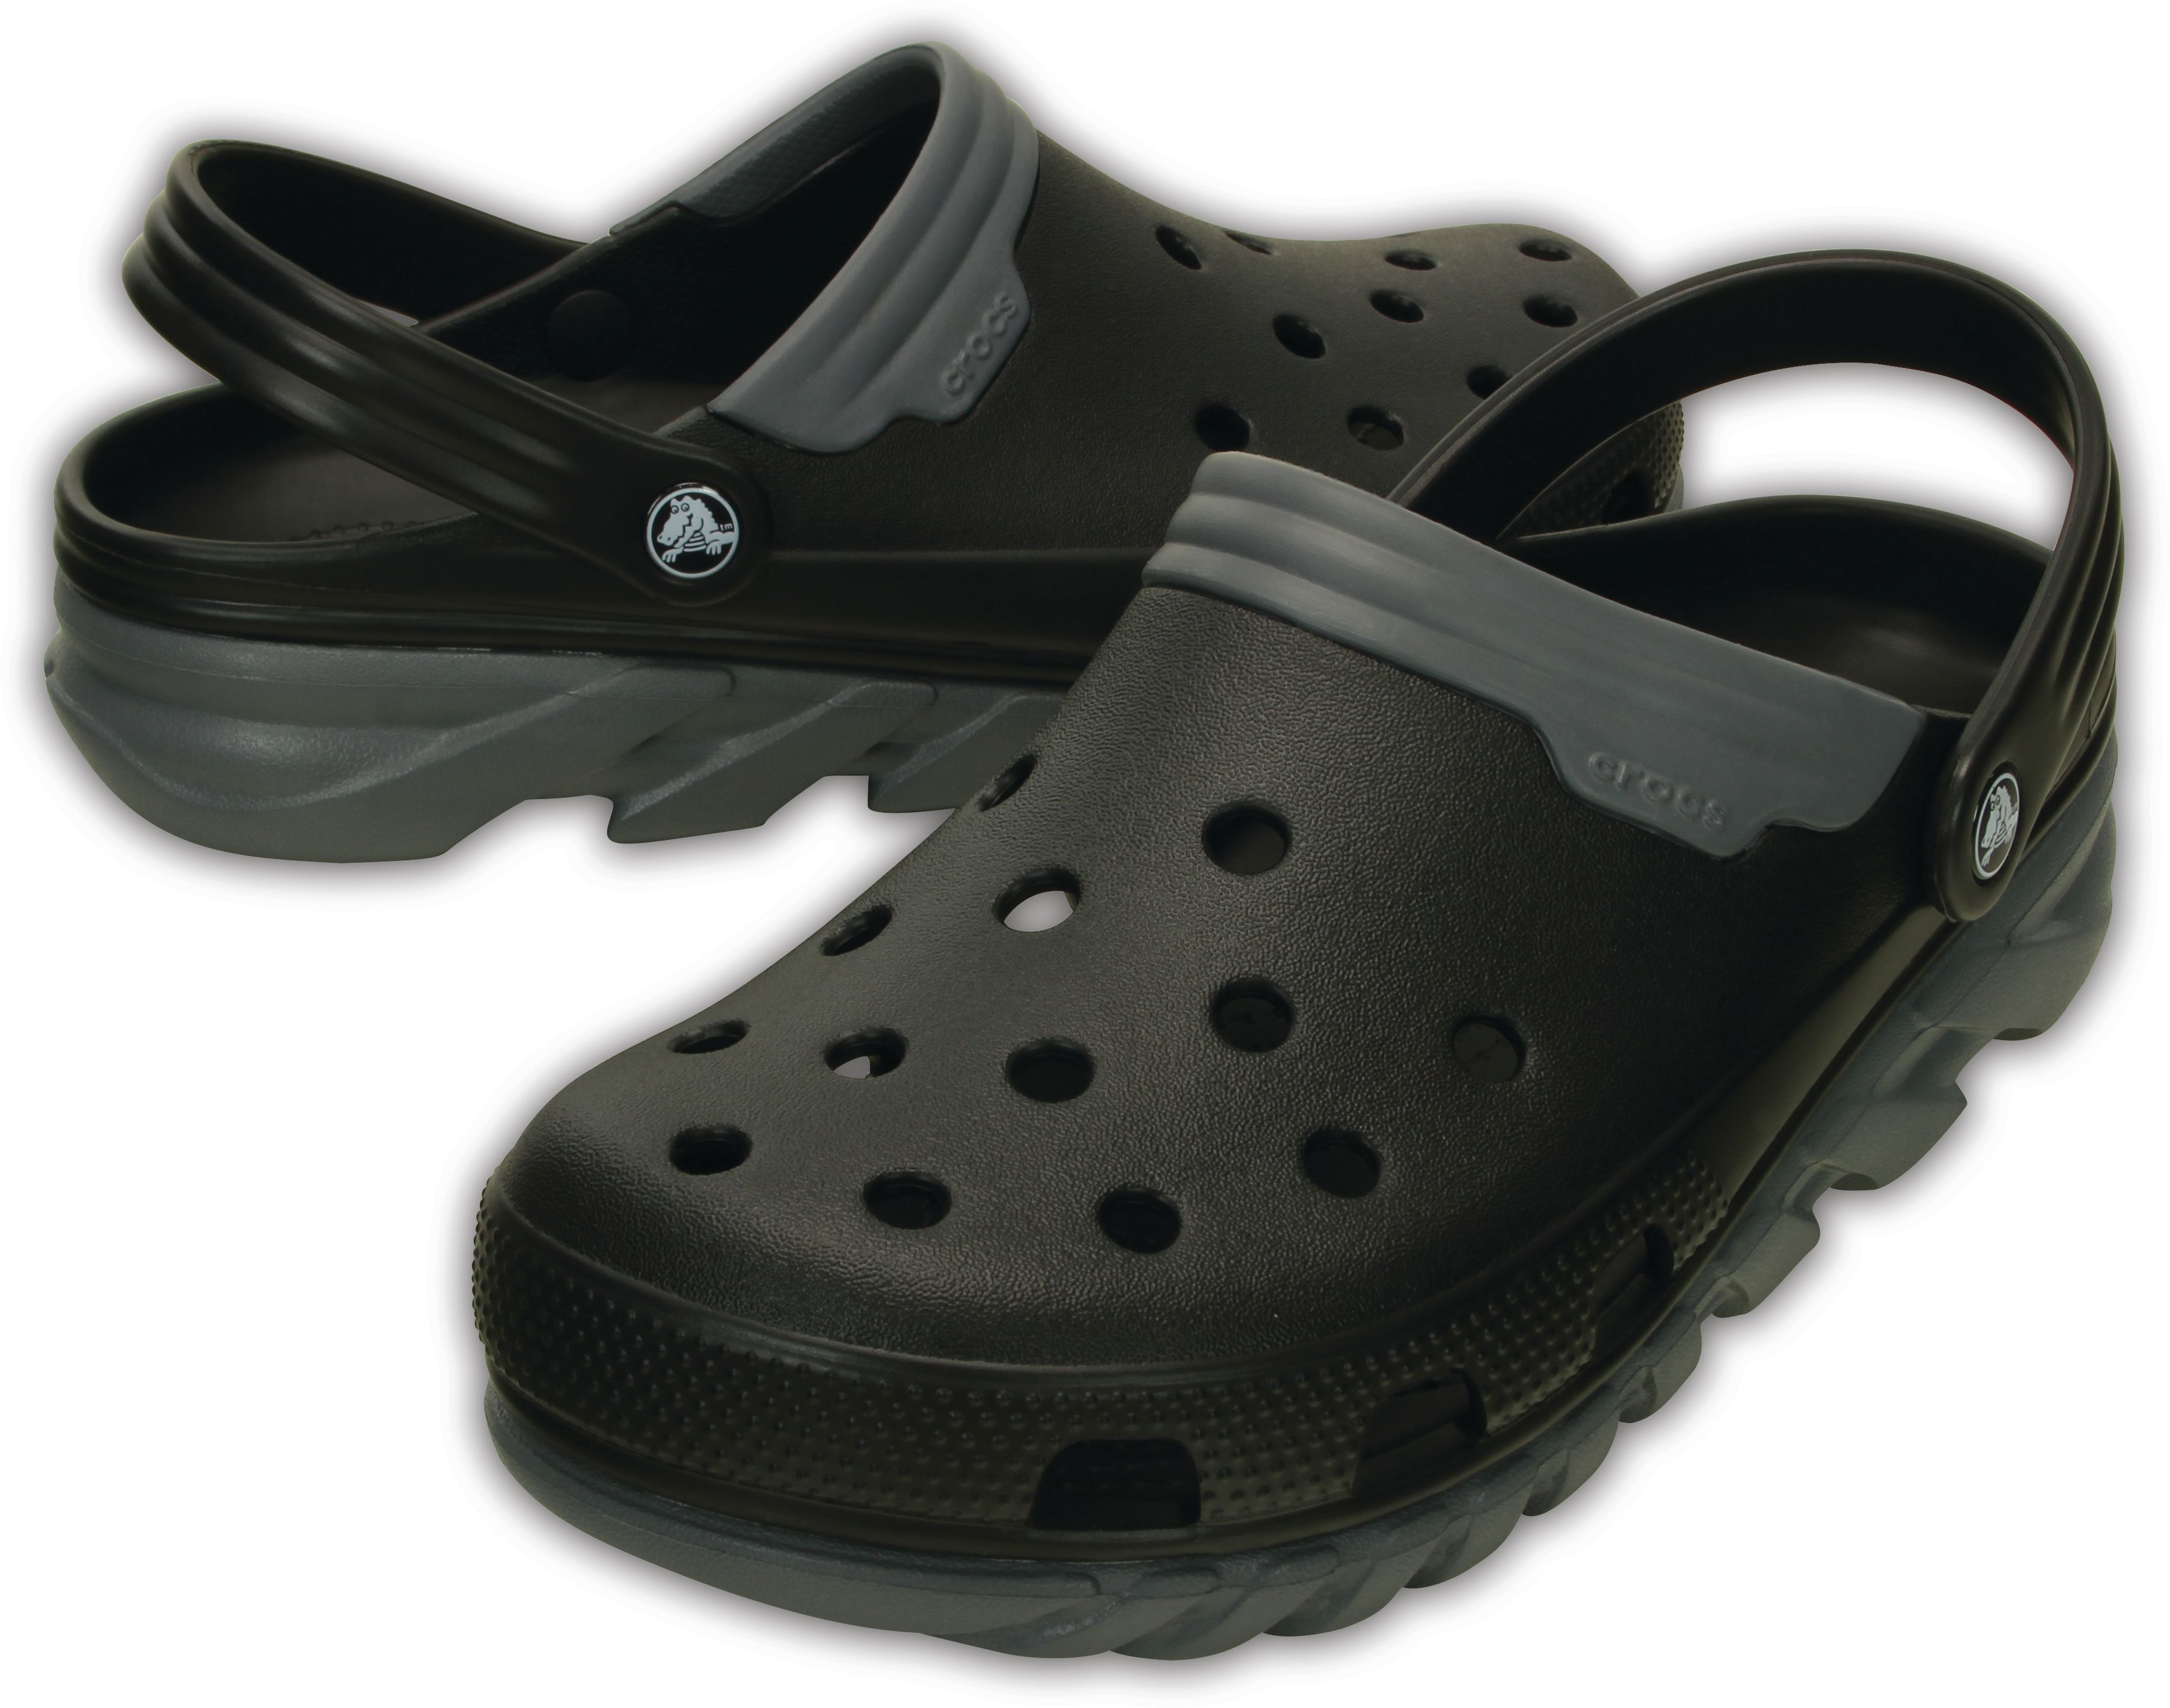 Crocs Men Duet Max Black Sandals Buy Crocs Men Duet Max Black Sandals